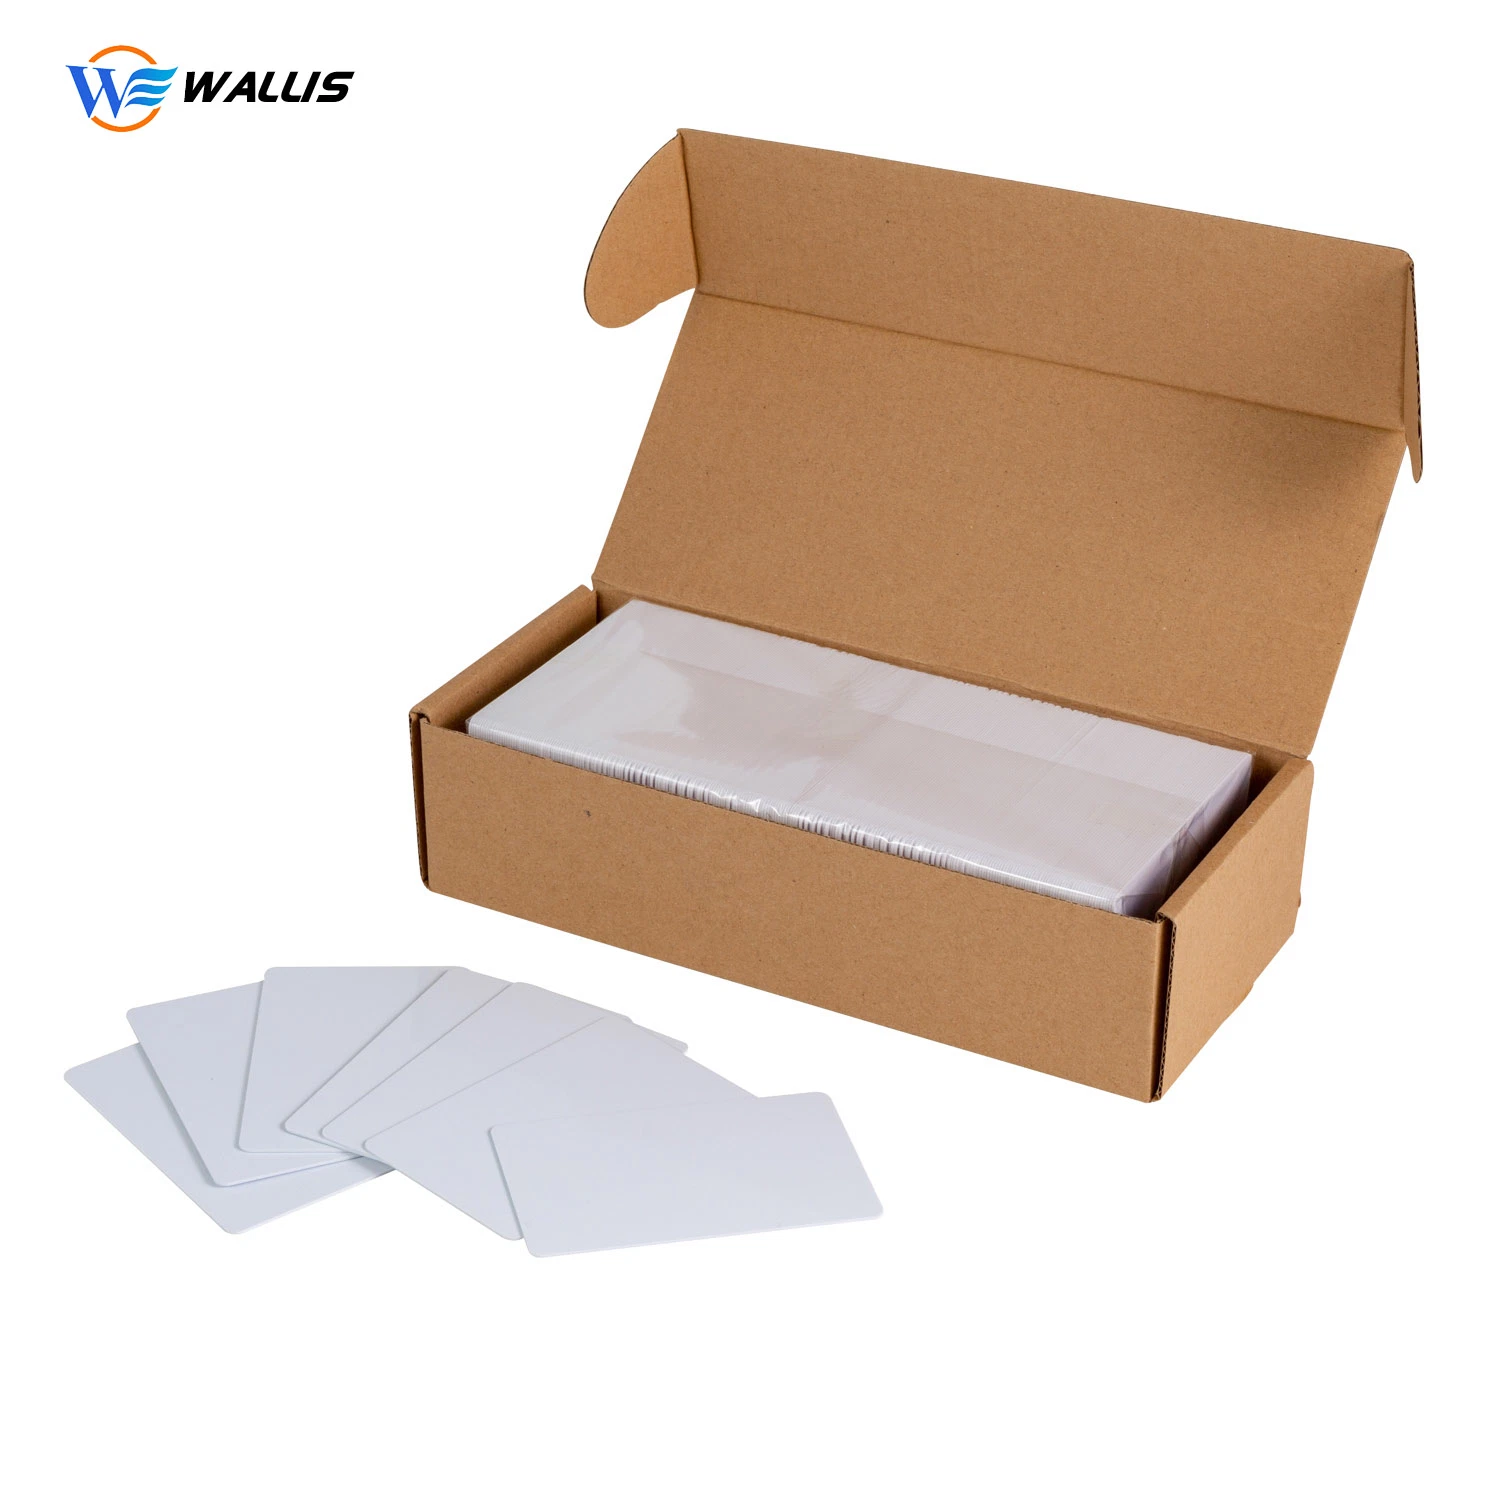 Cores Personalizadas da Impressão Offset Cr80 Cr90 Cartão de produtos de plástico de PVC em branco/Interface dupla Cartão Inteligente RFID/ cartão de PVC a jato de tinta